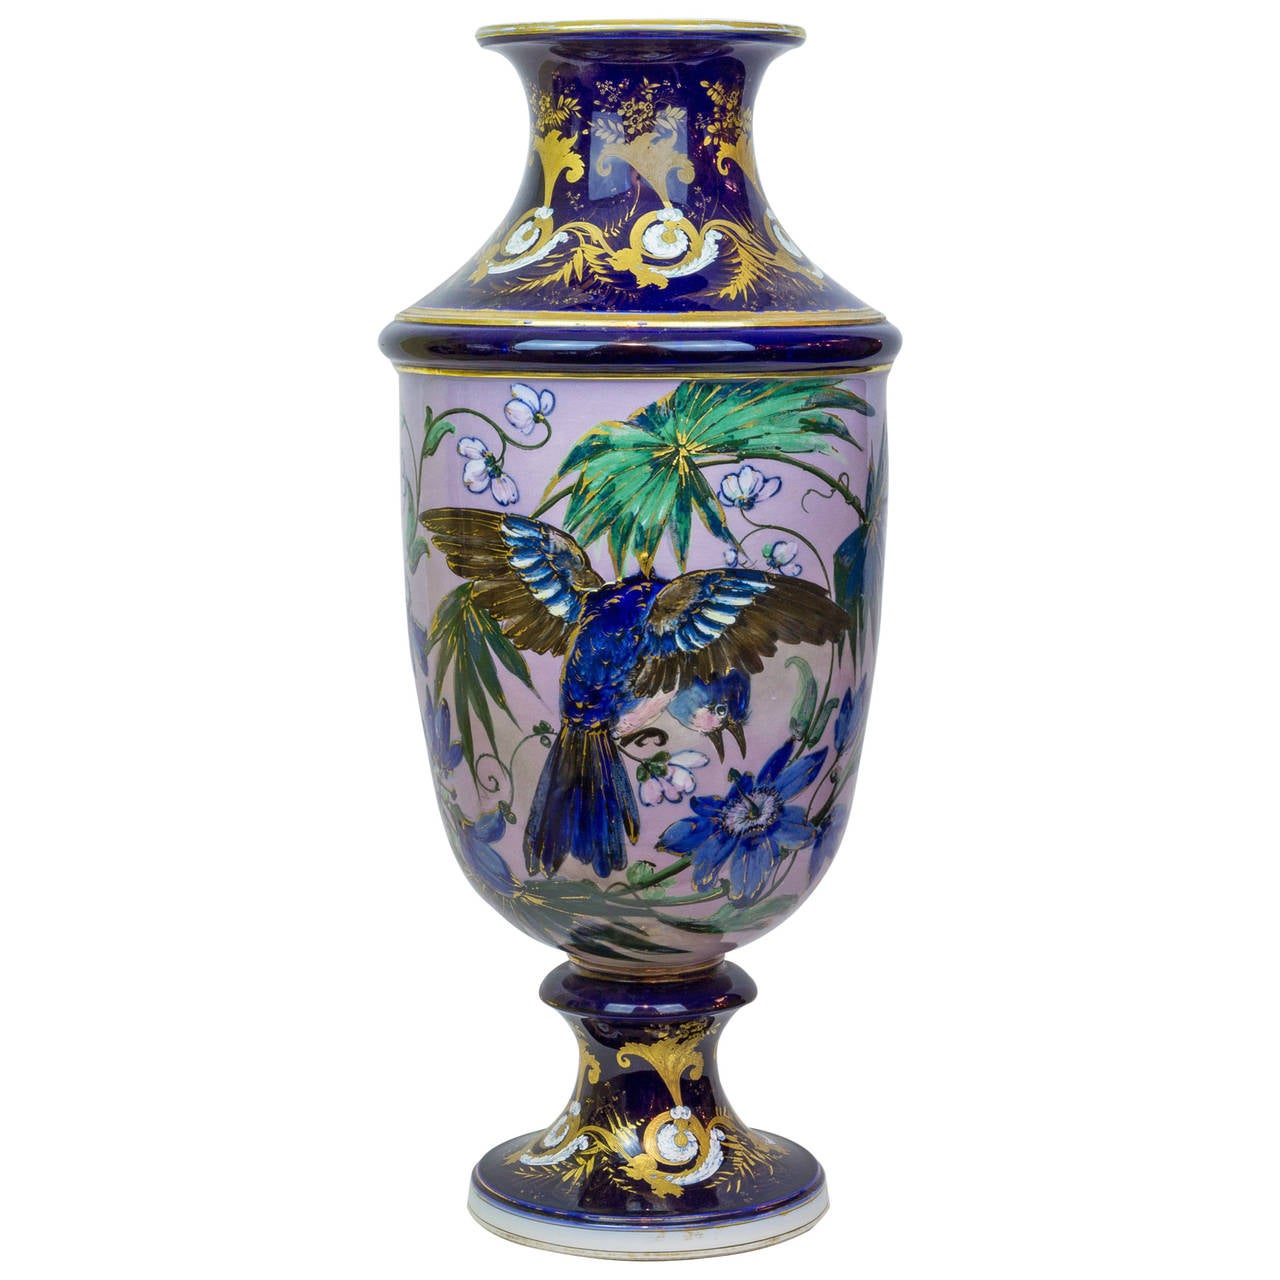 Grand vase esthétique en porcelaine avec décorations florales et d'oiseaux